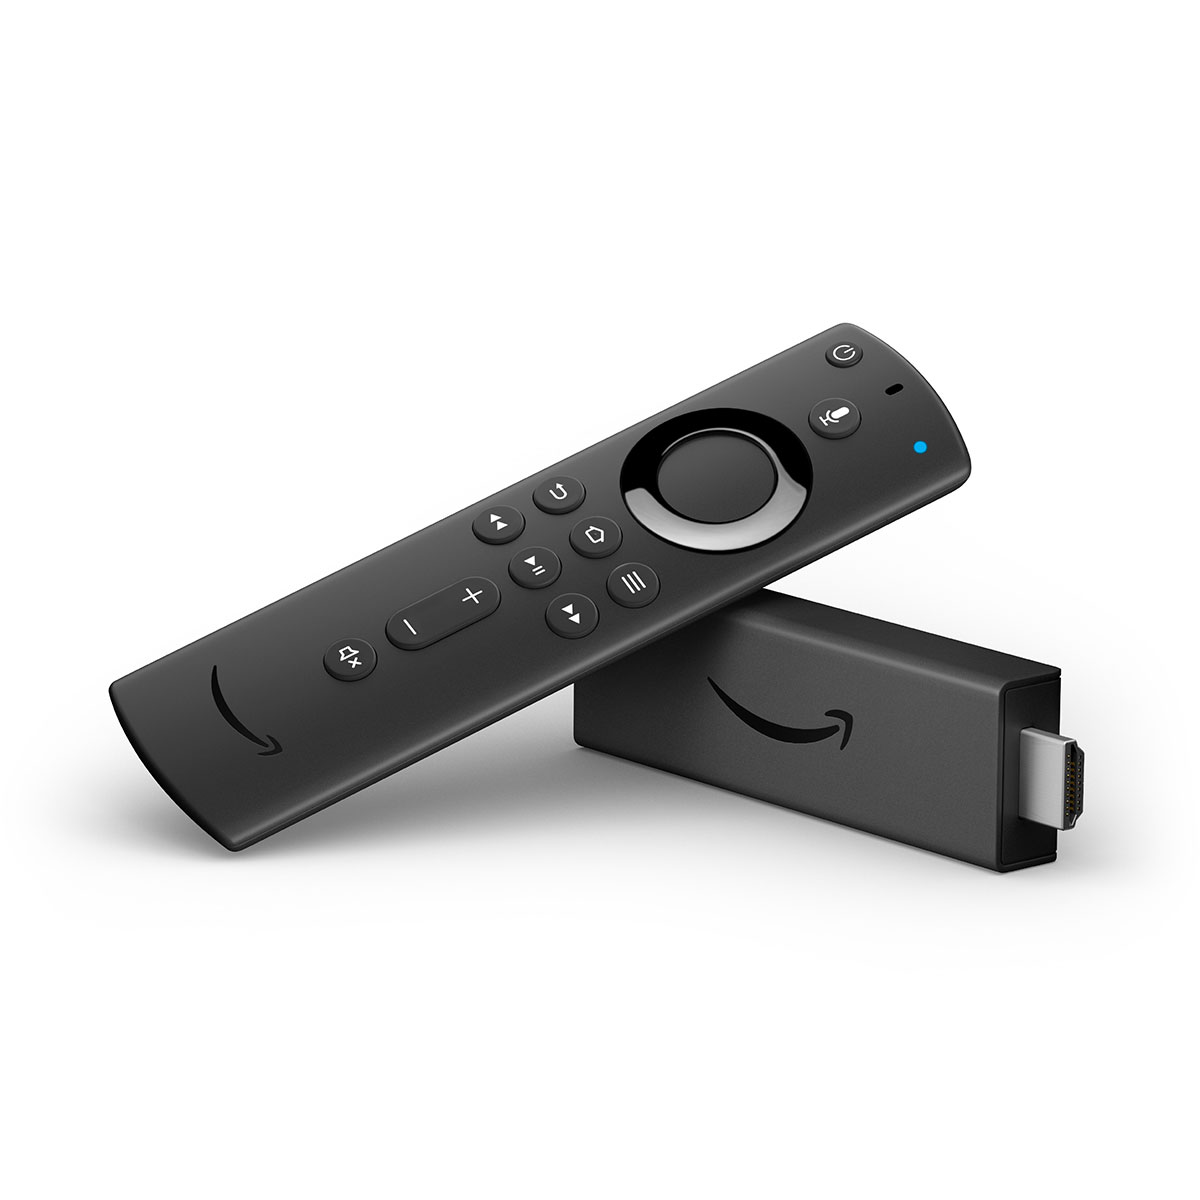 【今週発売の注目製品】AlexaやHDR10+に対応した「Fire TV Stick 4K」が登場